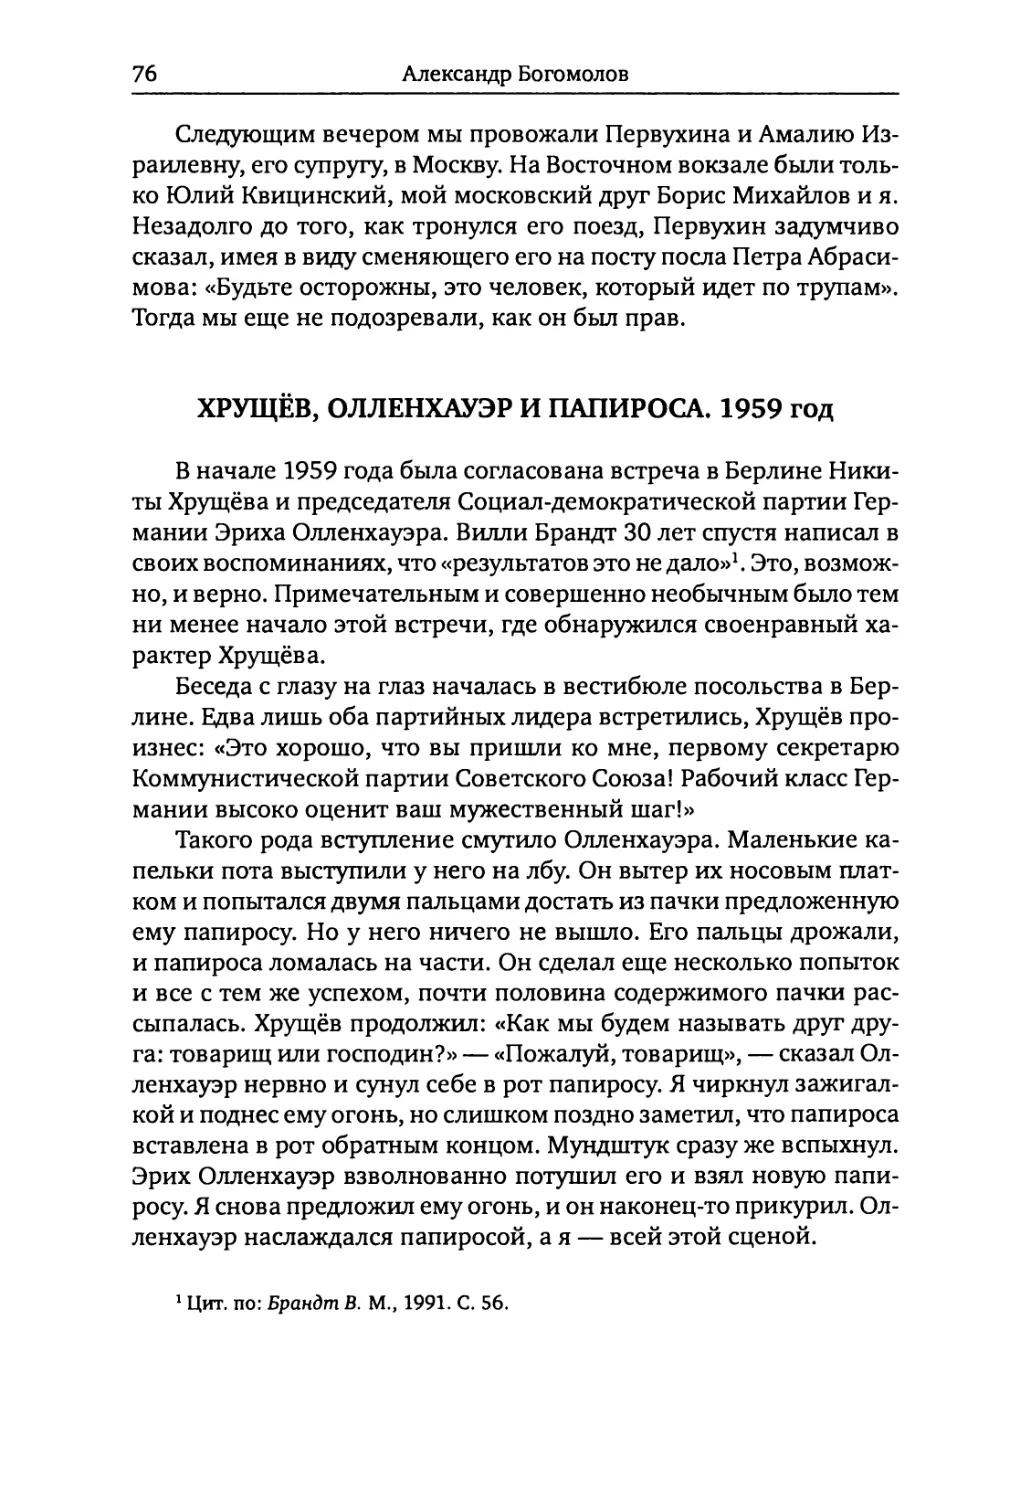 Хрущёв, Олленхауэр и папироса. 1959 год